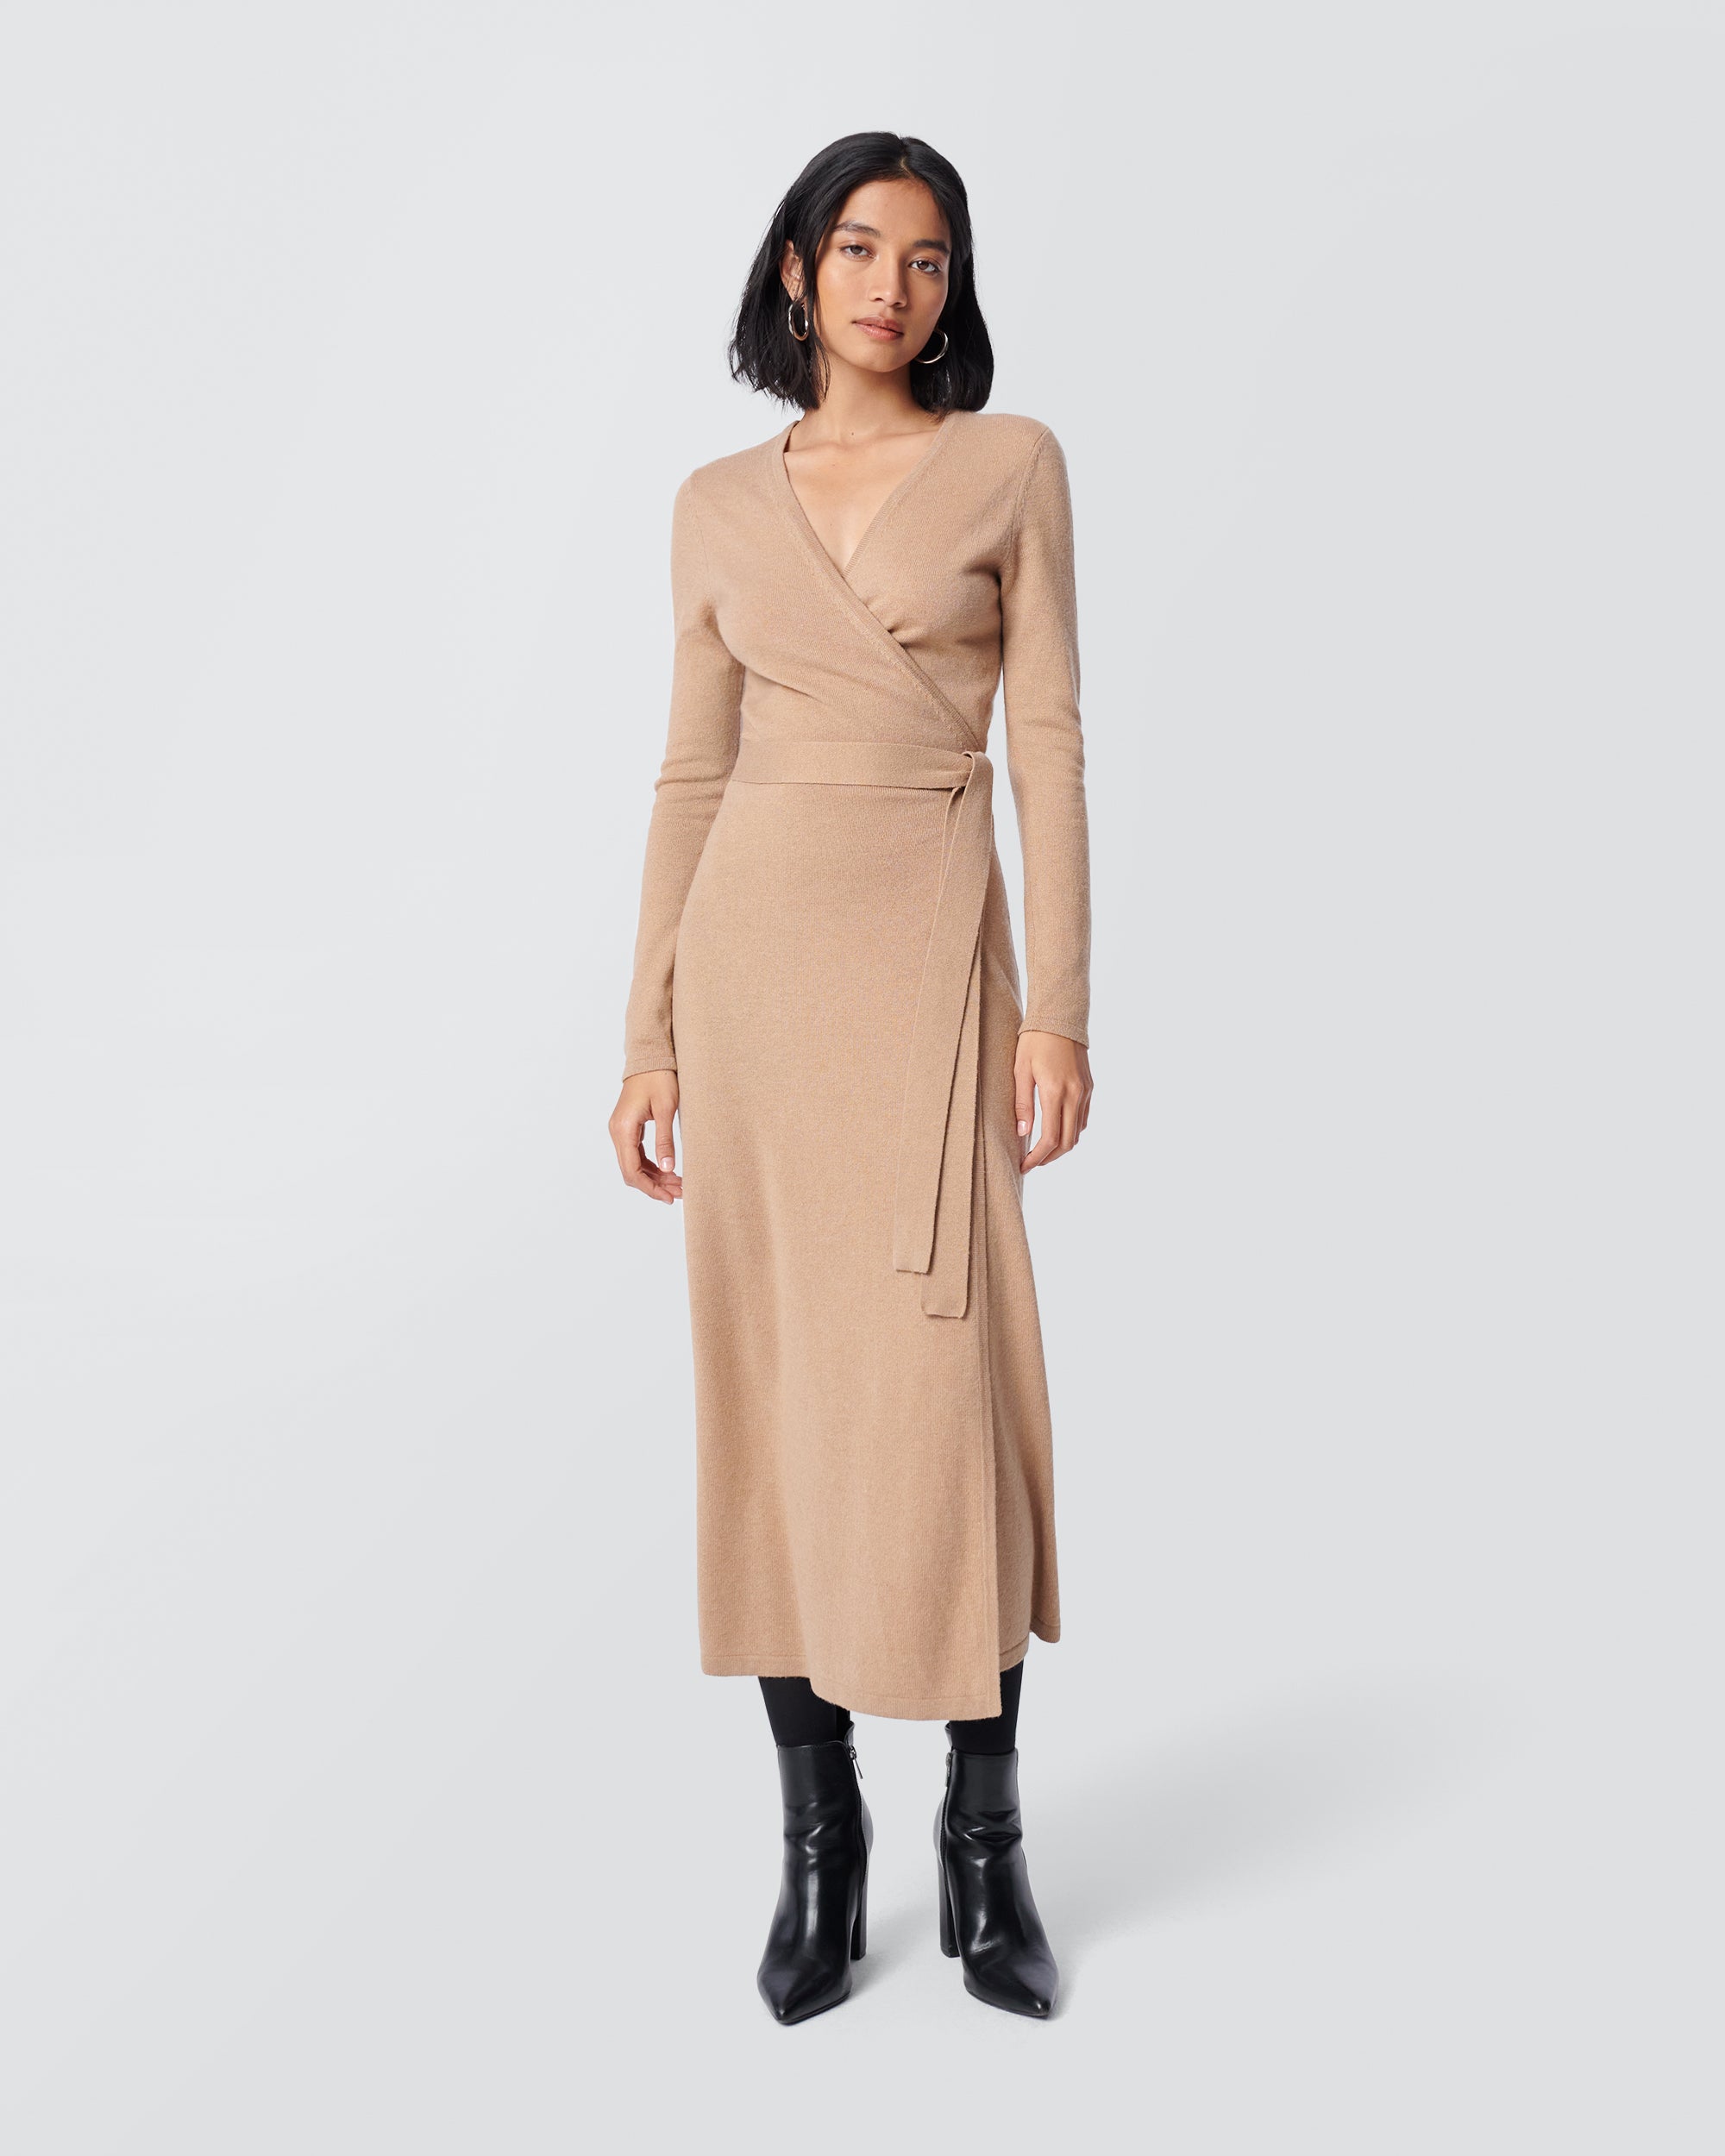 Wrap Dresses – Diane von Furstenberg